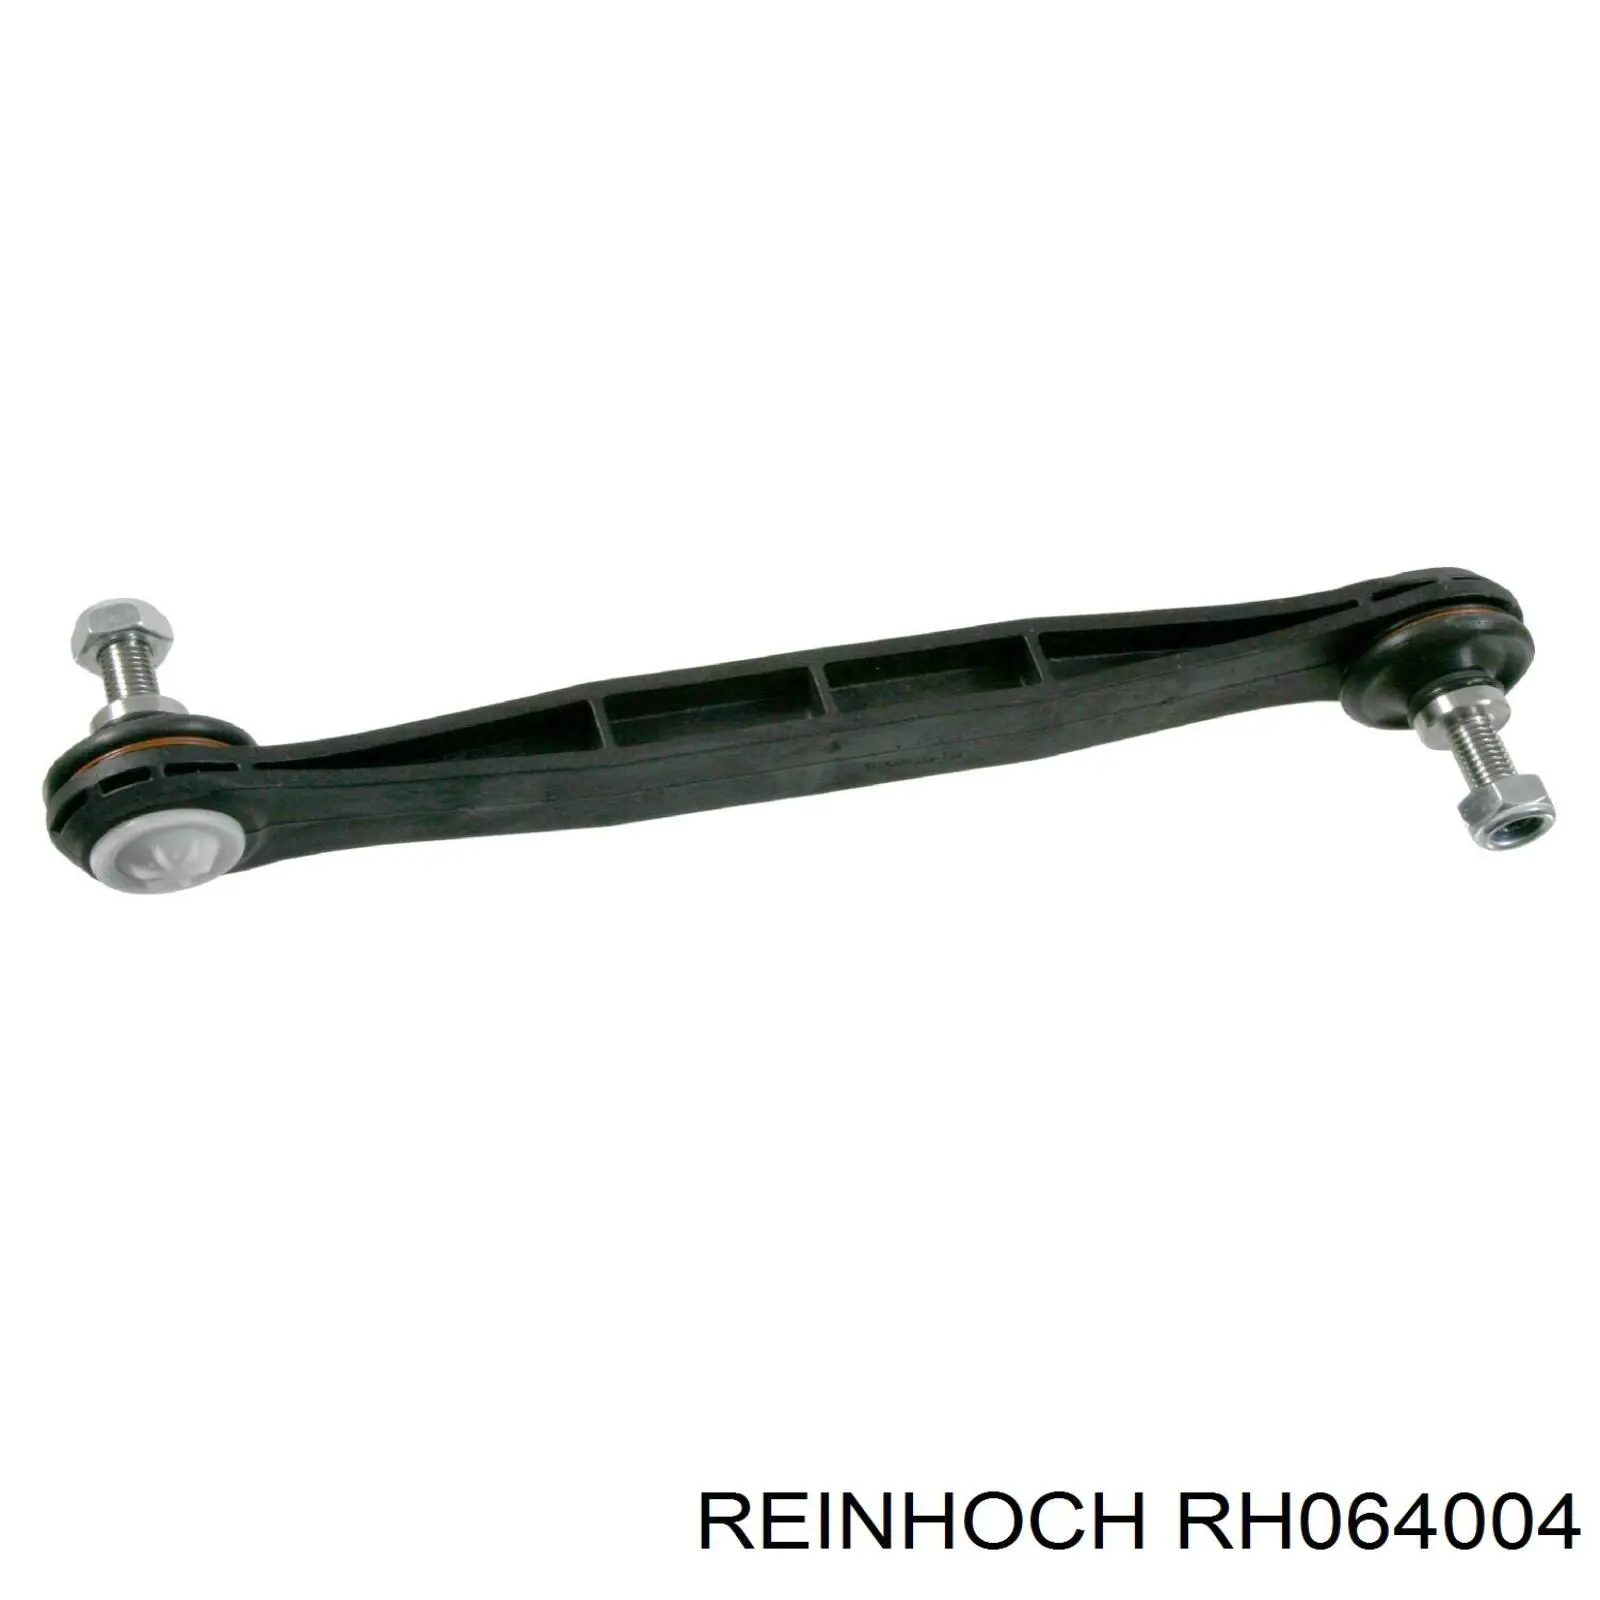 RH064004 Reinhoch soporte de barra estabilizadora delantera